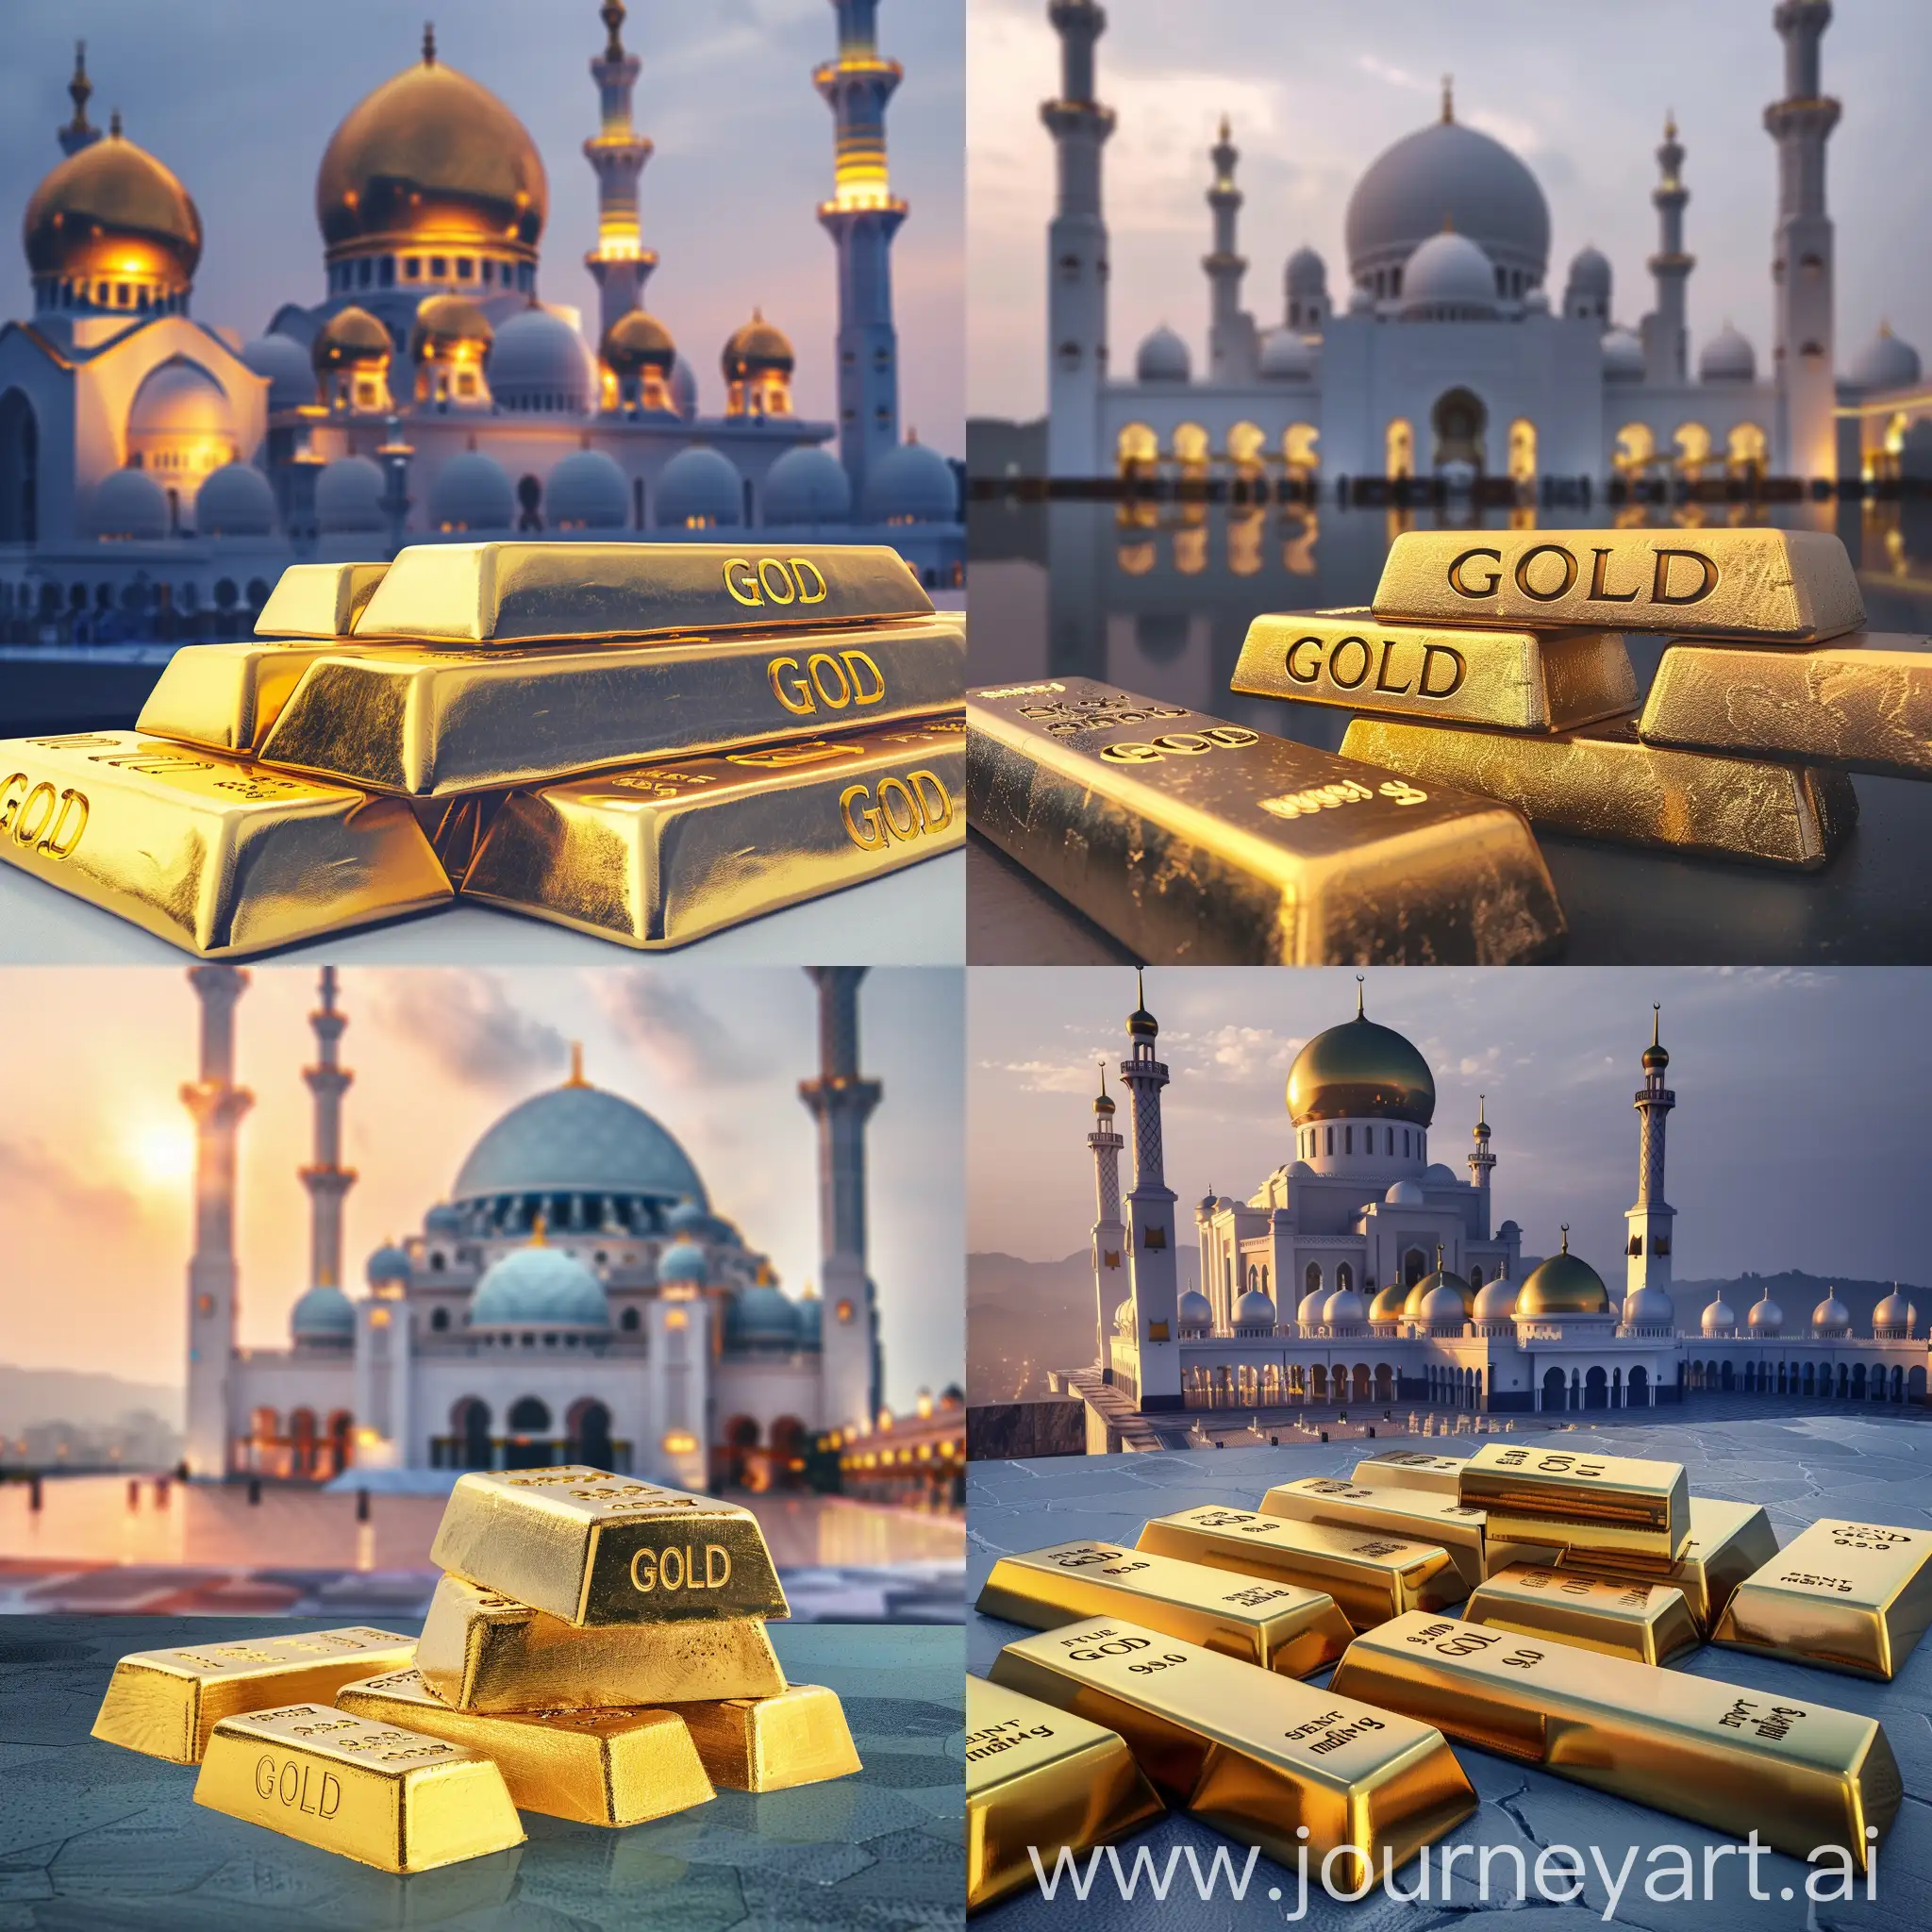 Картинка для шариата, на фоне мечеть, также на картинке должны быть изображены слитки золота. На слитках написано слово "GOLD"